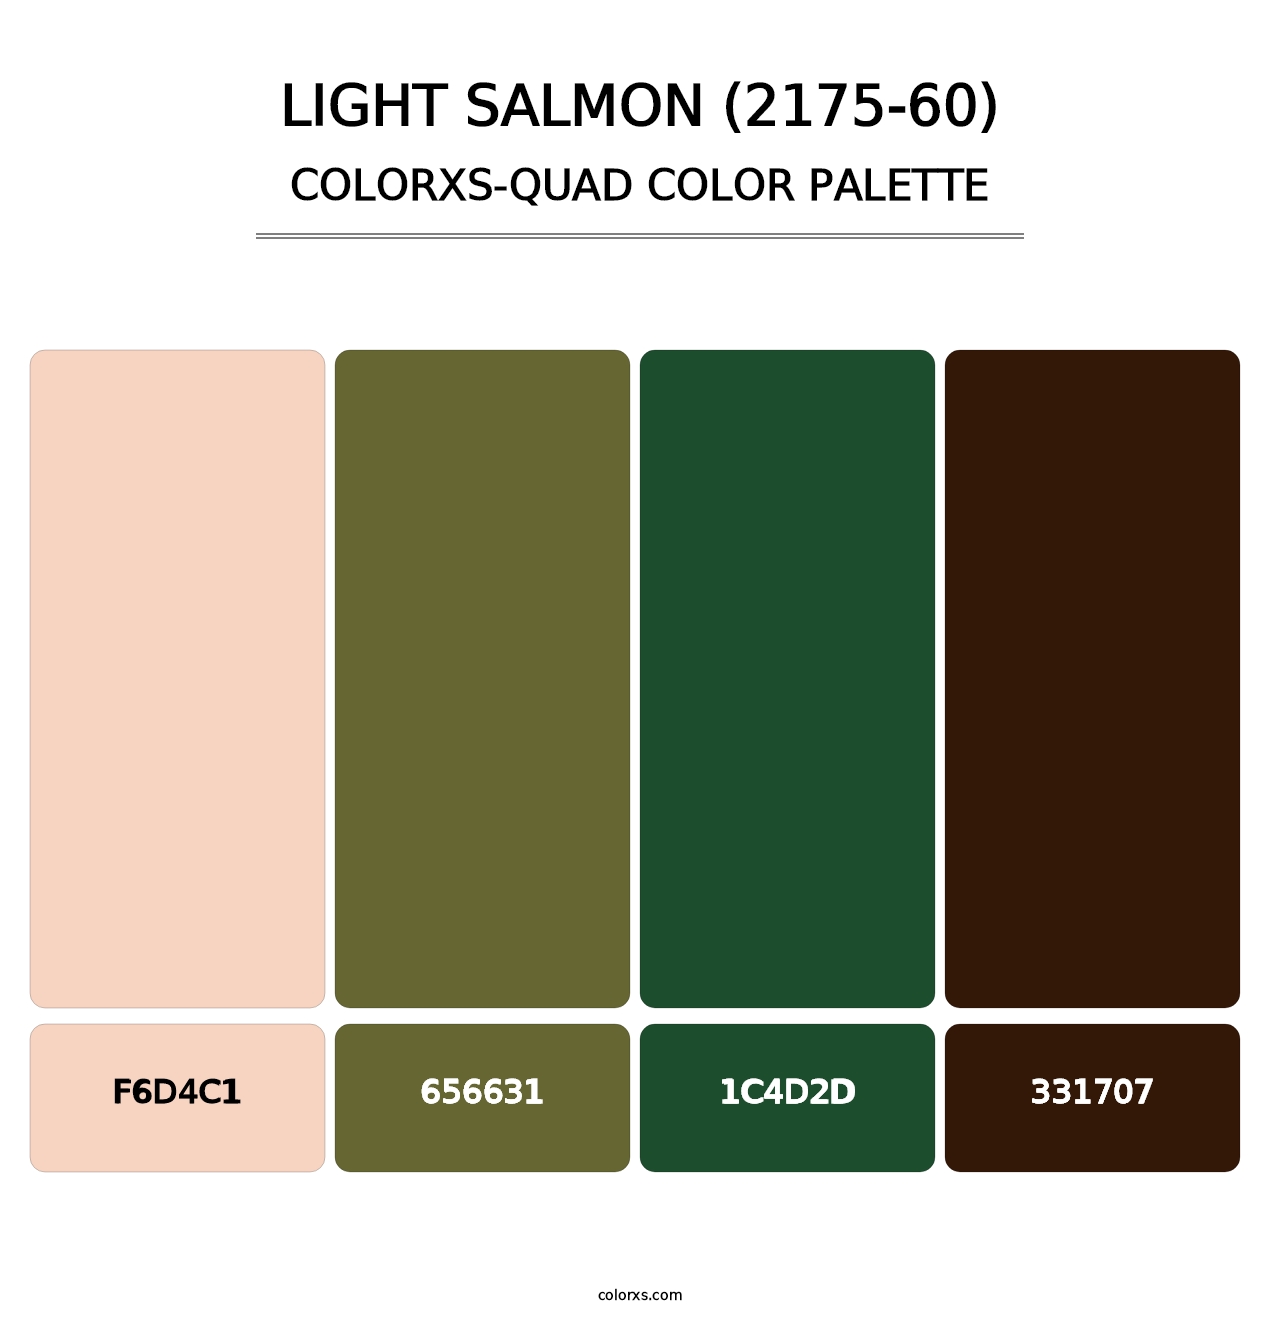 Light Salmon (2175-60) - Colorxs Quad Palette